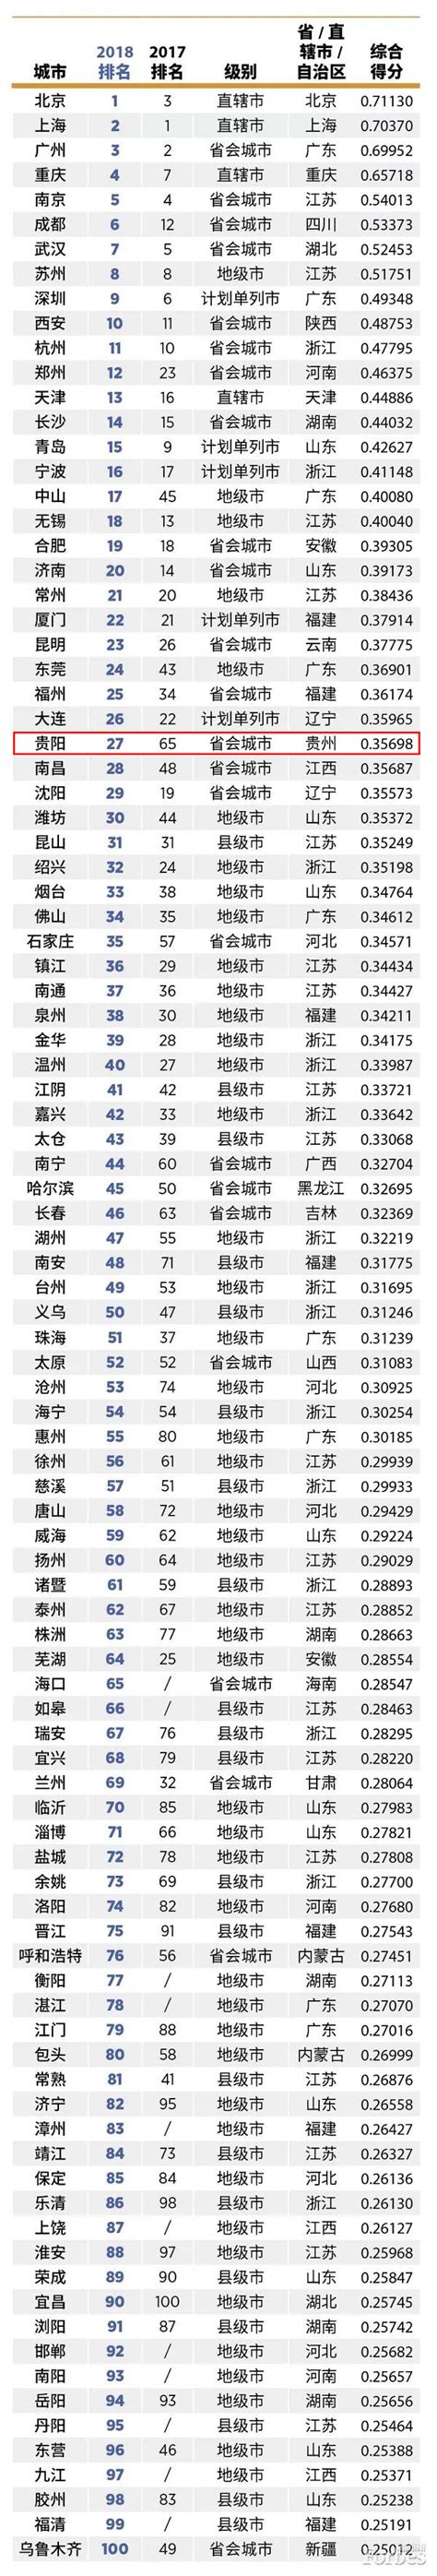 2018年“中国大陆最佳商业城市”榜单发布 贵阳排名27 较去年上升38名 - 当代先锋网 - 要闻